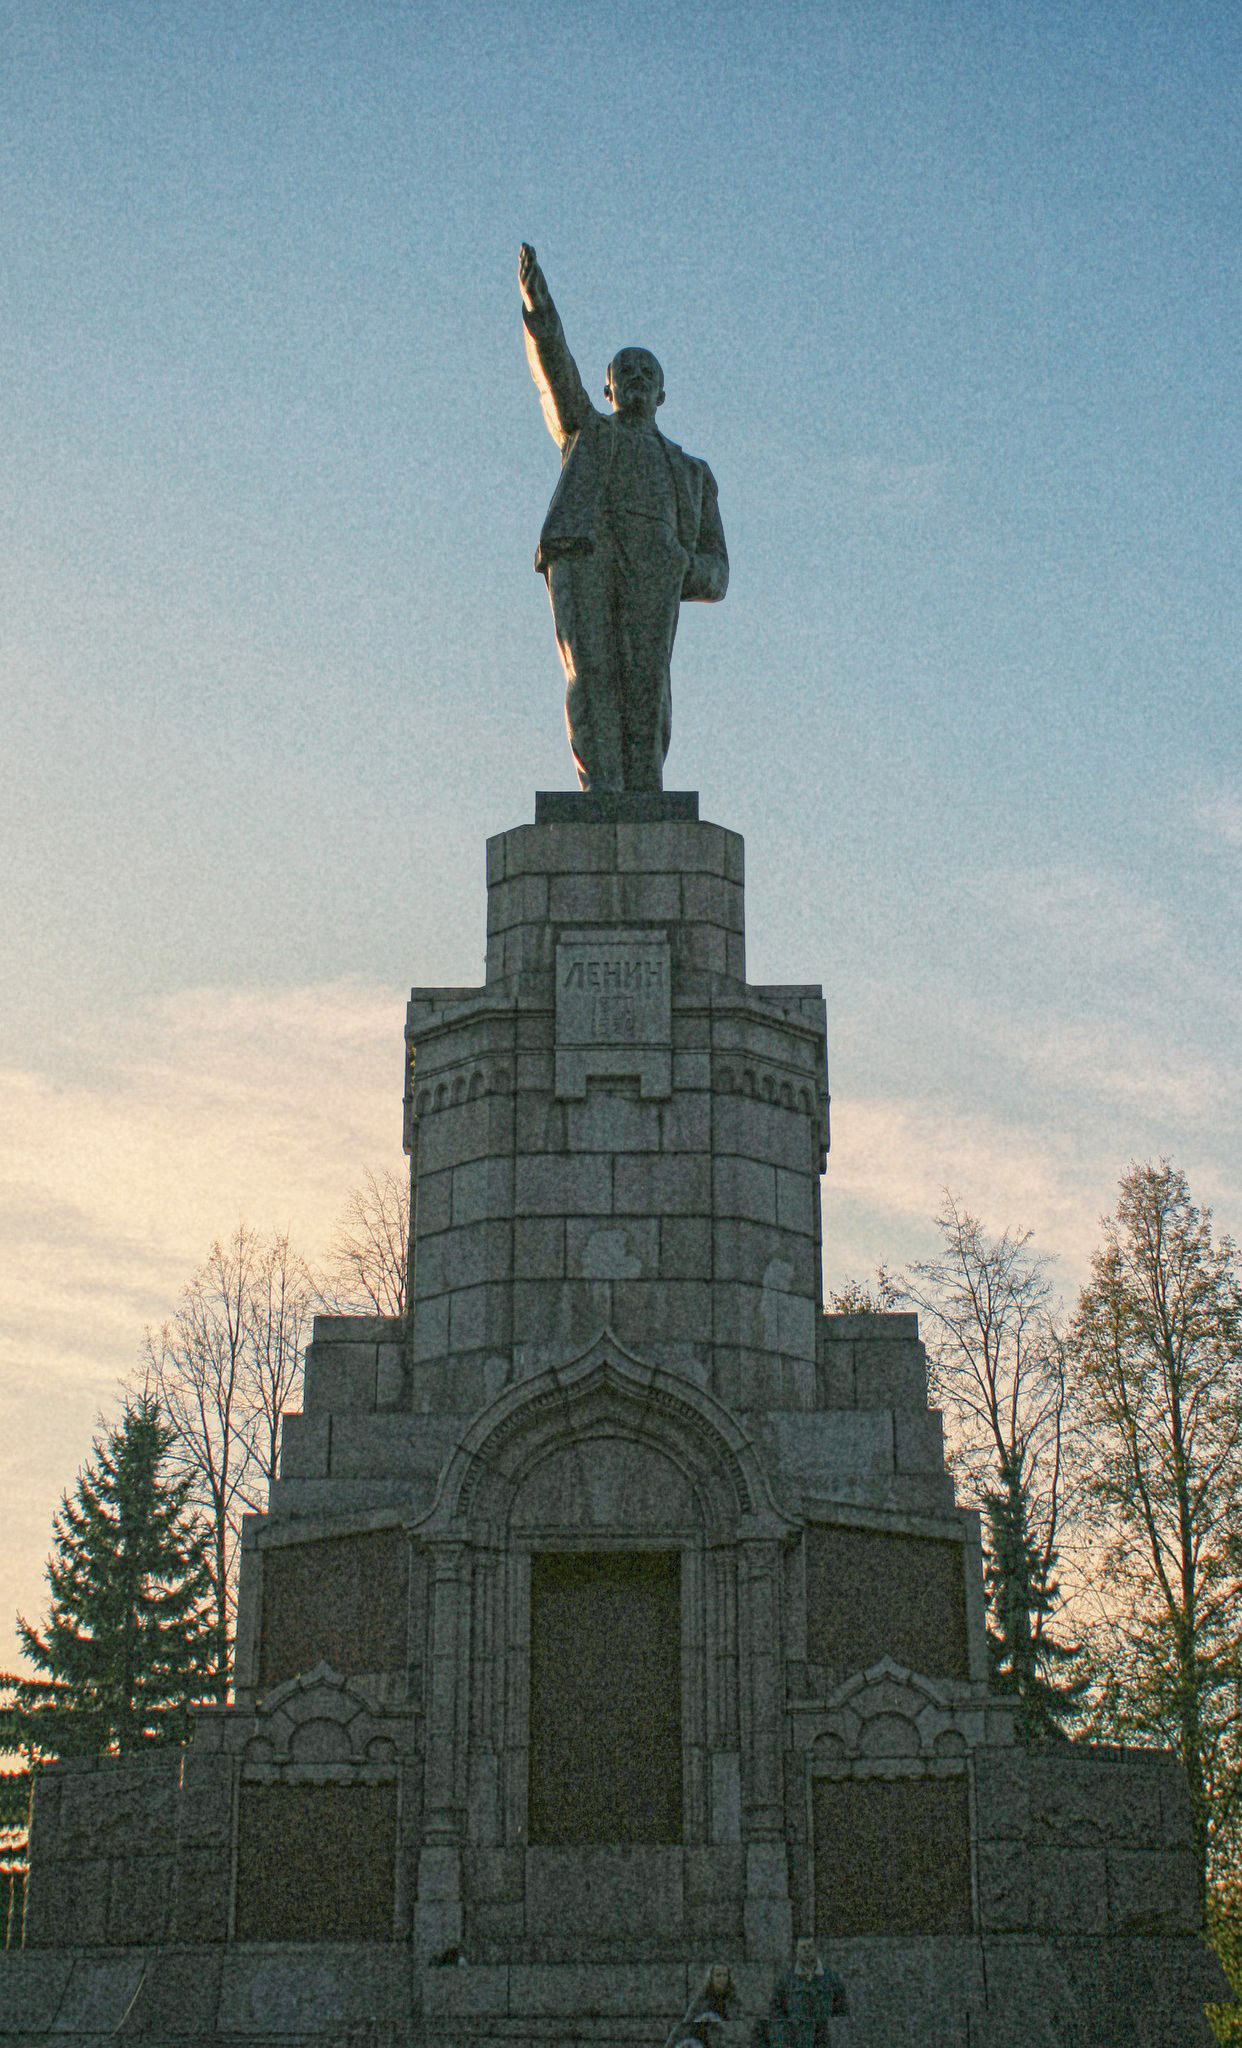 Реферат: Памятник в честь 300-летия дома Романовых Кострома